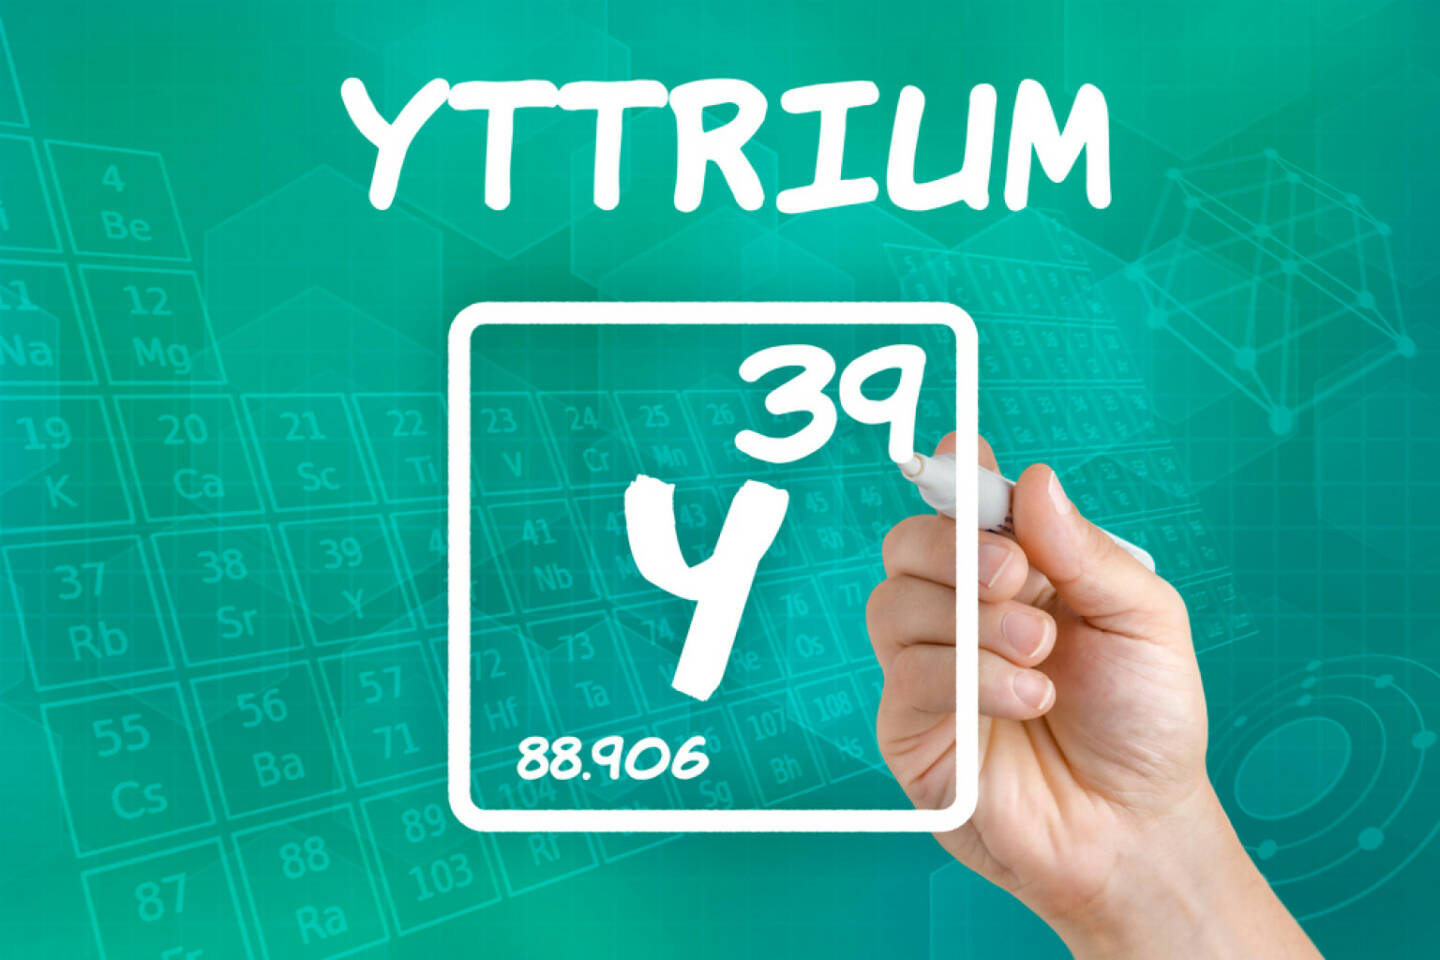 Yttrium, seltene Erden, Metall, http://www.shutterstock.com/de/pic-152211524/stock-photo-symbol-for-the-chemical-element-yttrium.html